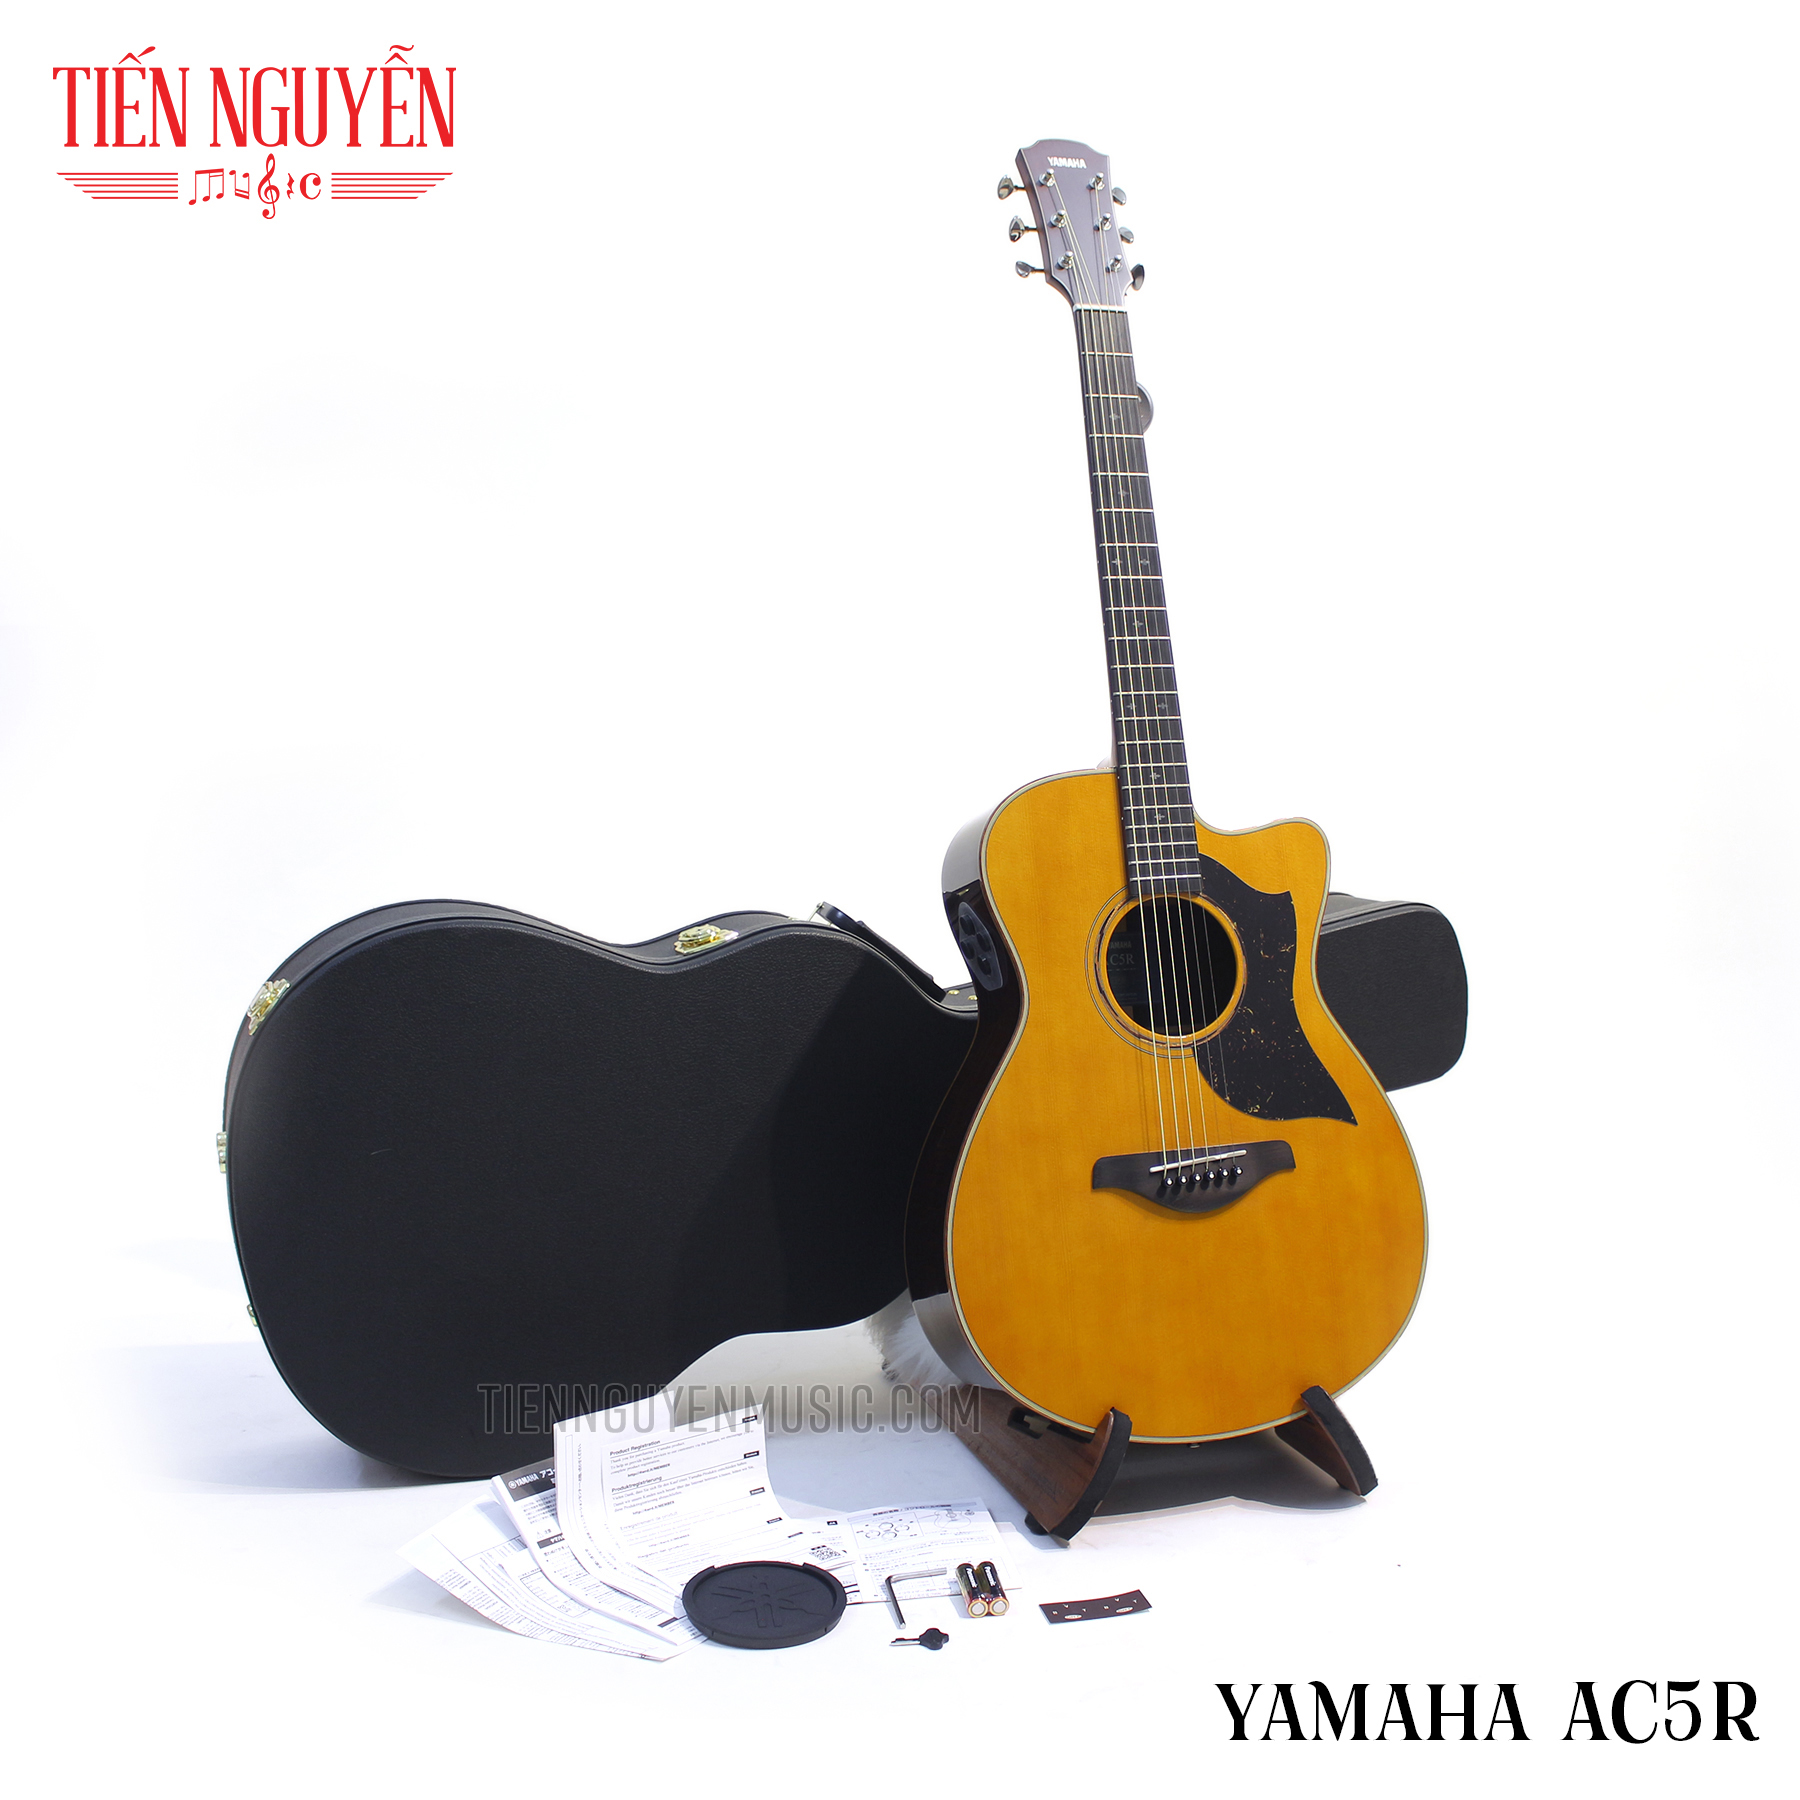 Guitar Acoustic Yamaha AC5R - Đẳng cấp, chất lượng, công nghệ và rẻ đến bất ngờ